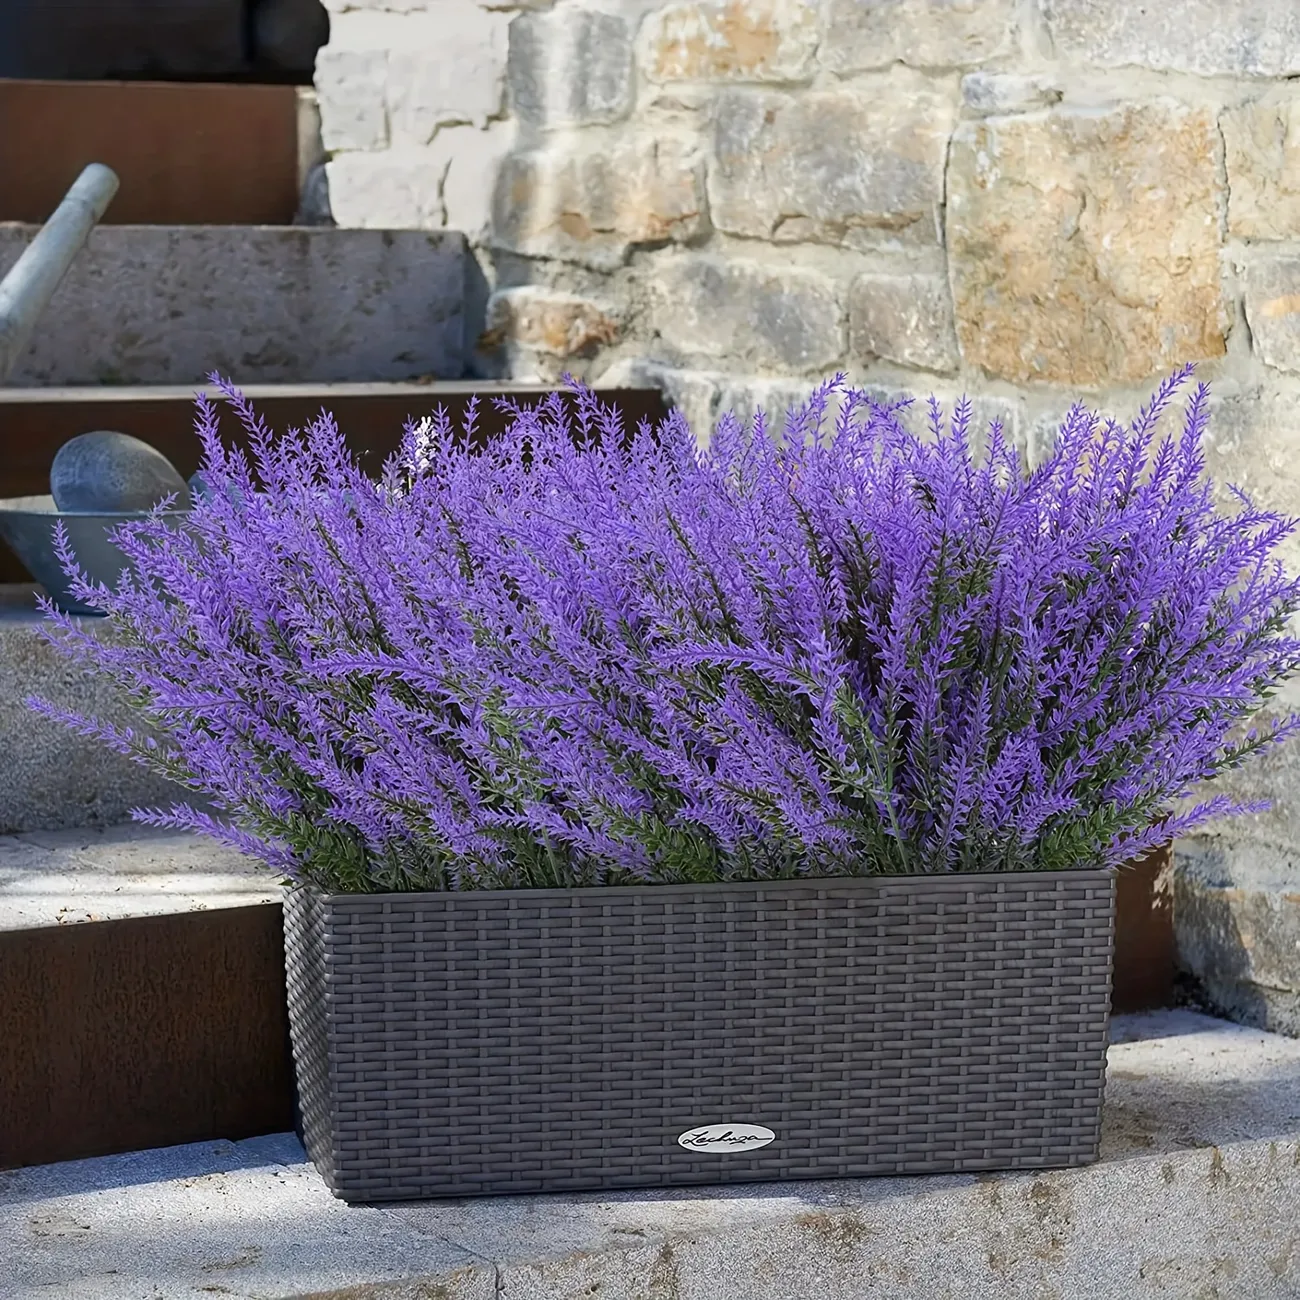 اسطوخودوس (Lavender)